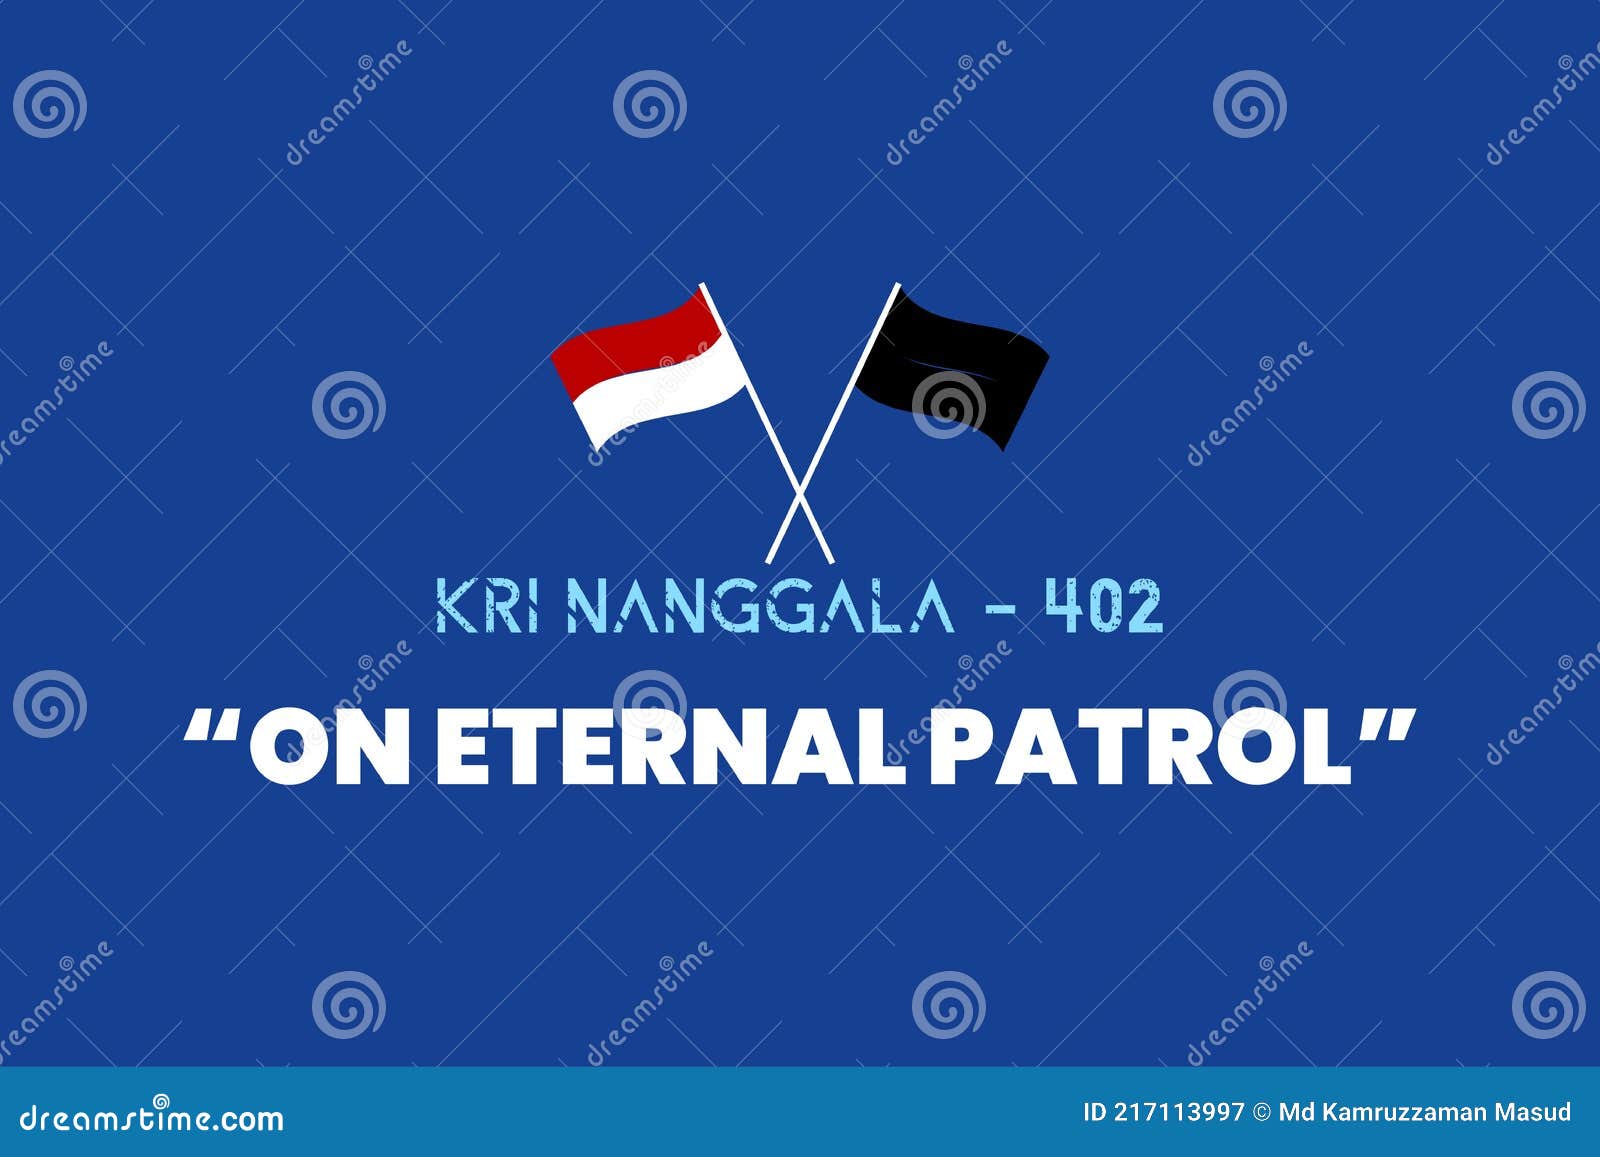 On eternal patrol nanggala 402